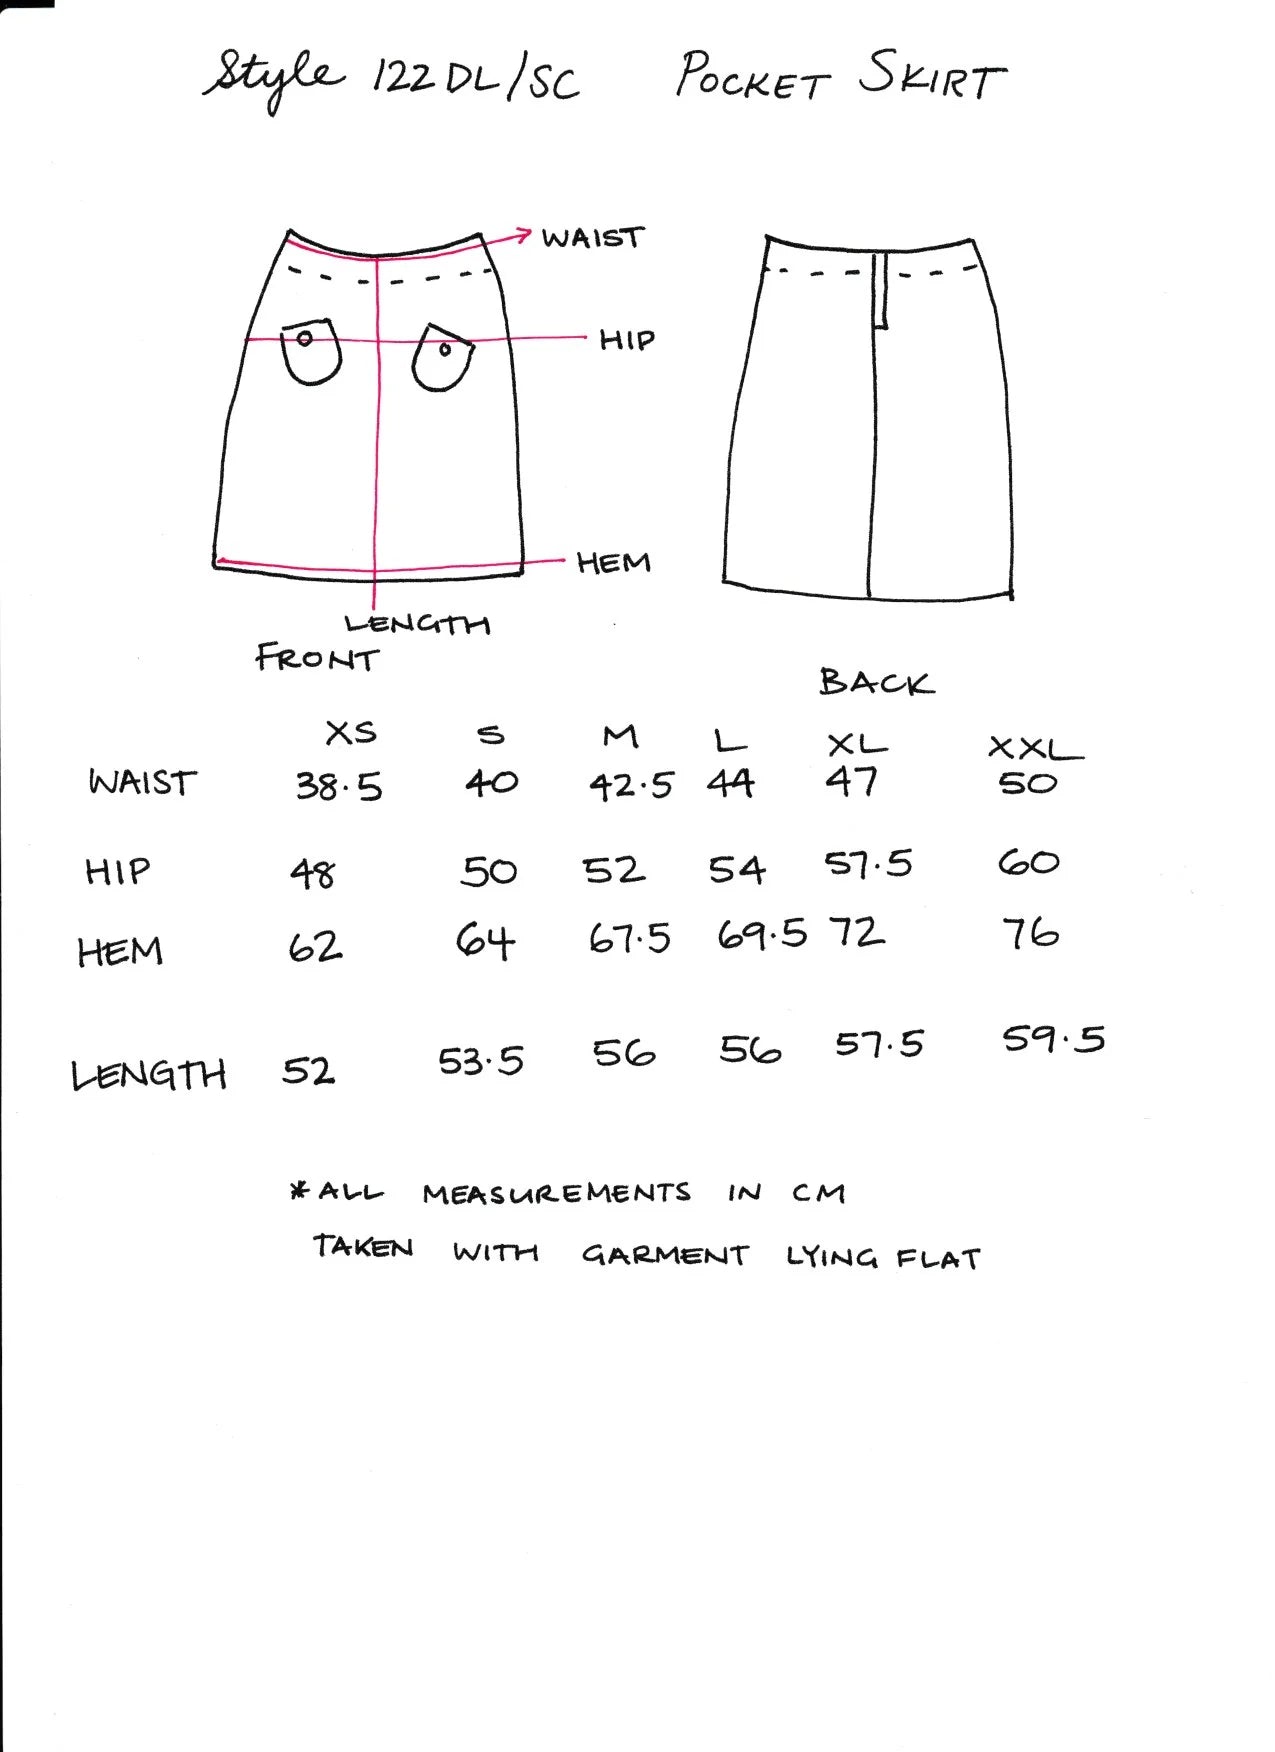 Women's Handmade Pocket Skirt - Denim